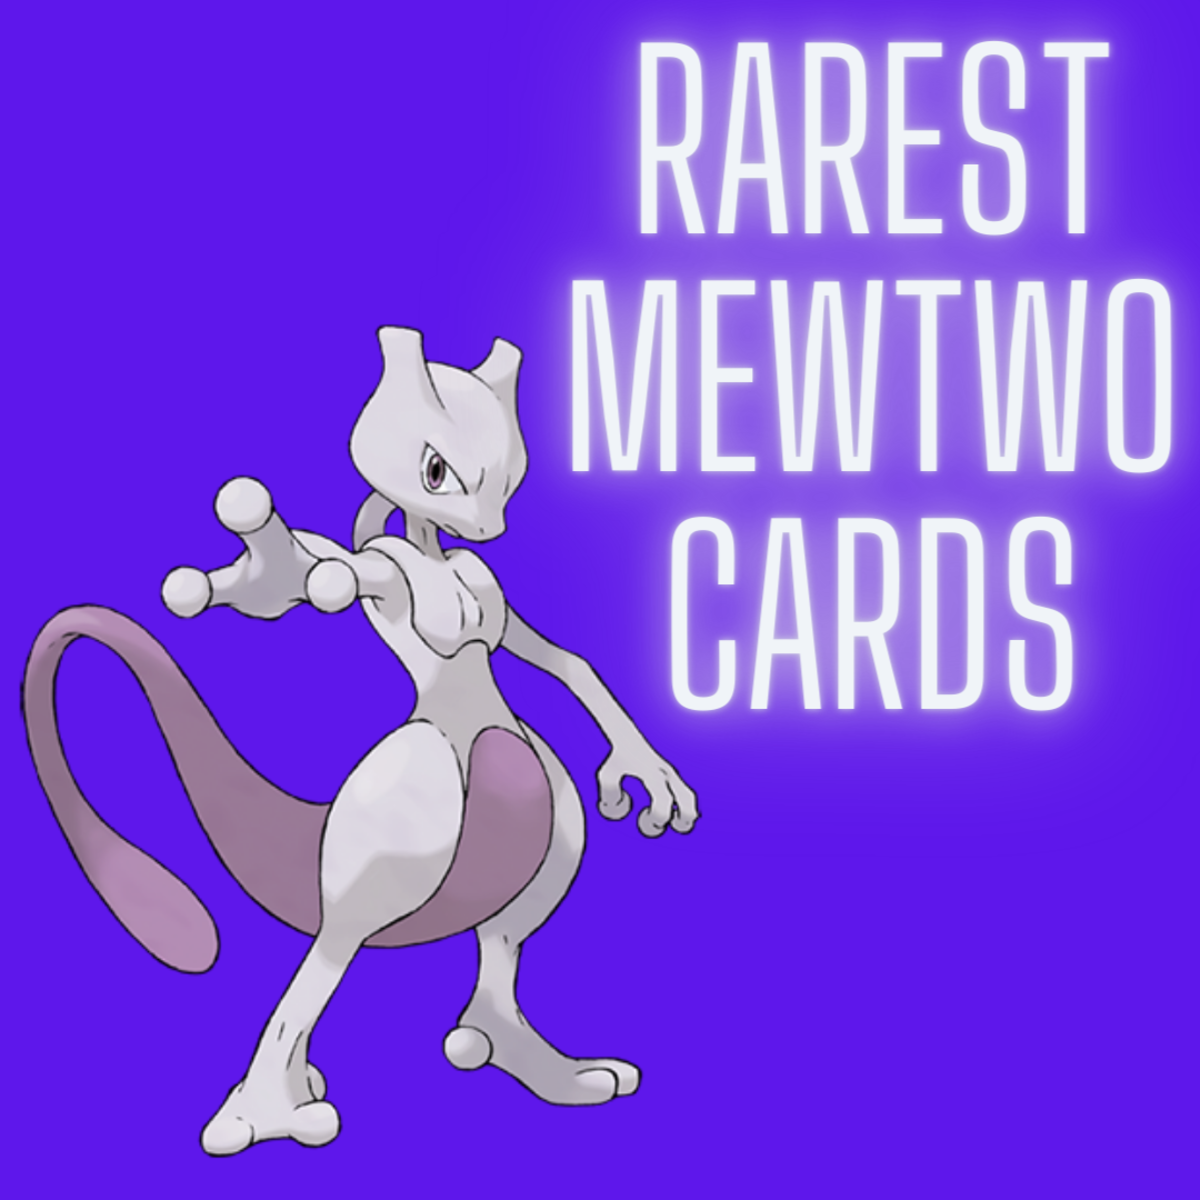 Pokémon - Mewtwo  Pokemon mewtwo, Pokemon, Mewtwo